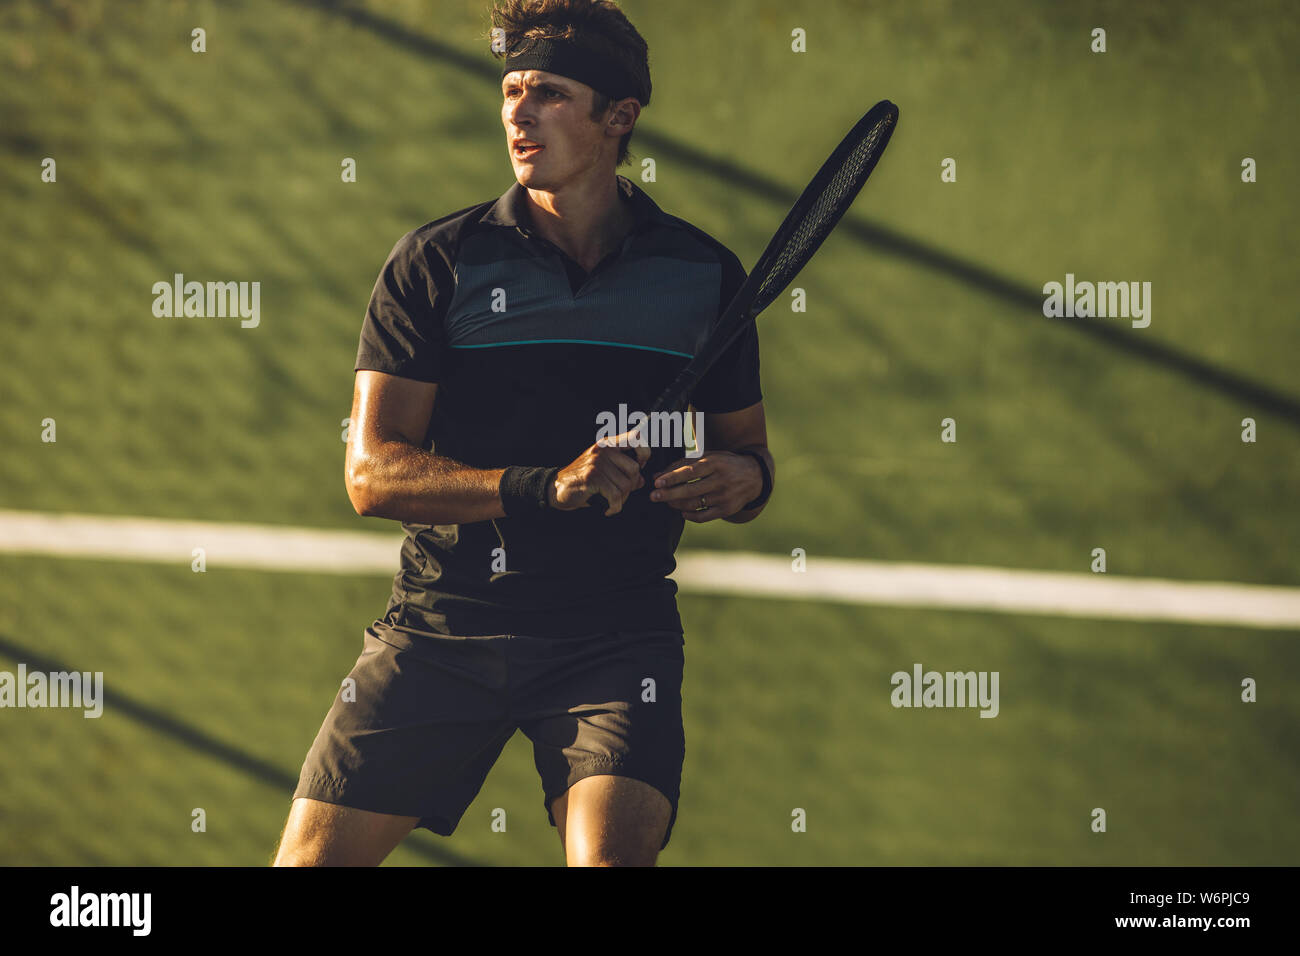 Joueur de tennis pro tennis club pratiquant sur une cour. Jeune joueur de tennis masculin jouant sur une surface dure. Banque D'Images